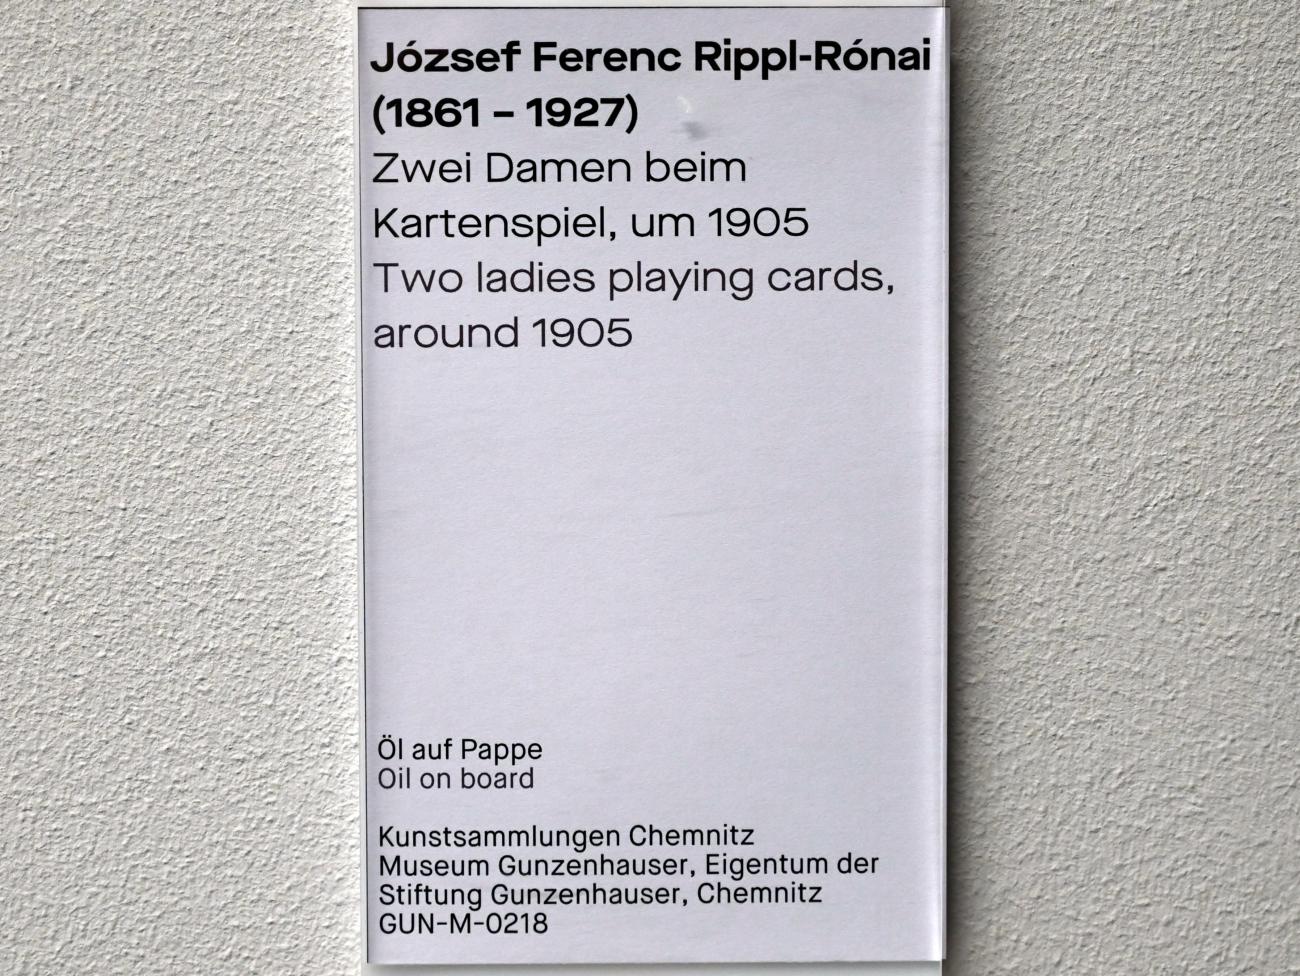 József Rippl-Rónai (1905–1912), Zwei Damen beim Kartenspiel, Chemnitz, Museum Gunzenhauser, Saal 3.3 - Würdigung der heimischen Natur, um 1905, Bild 2/2